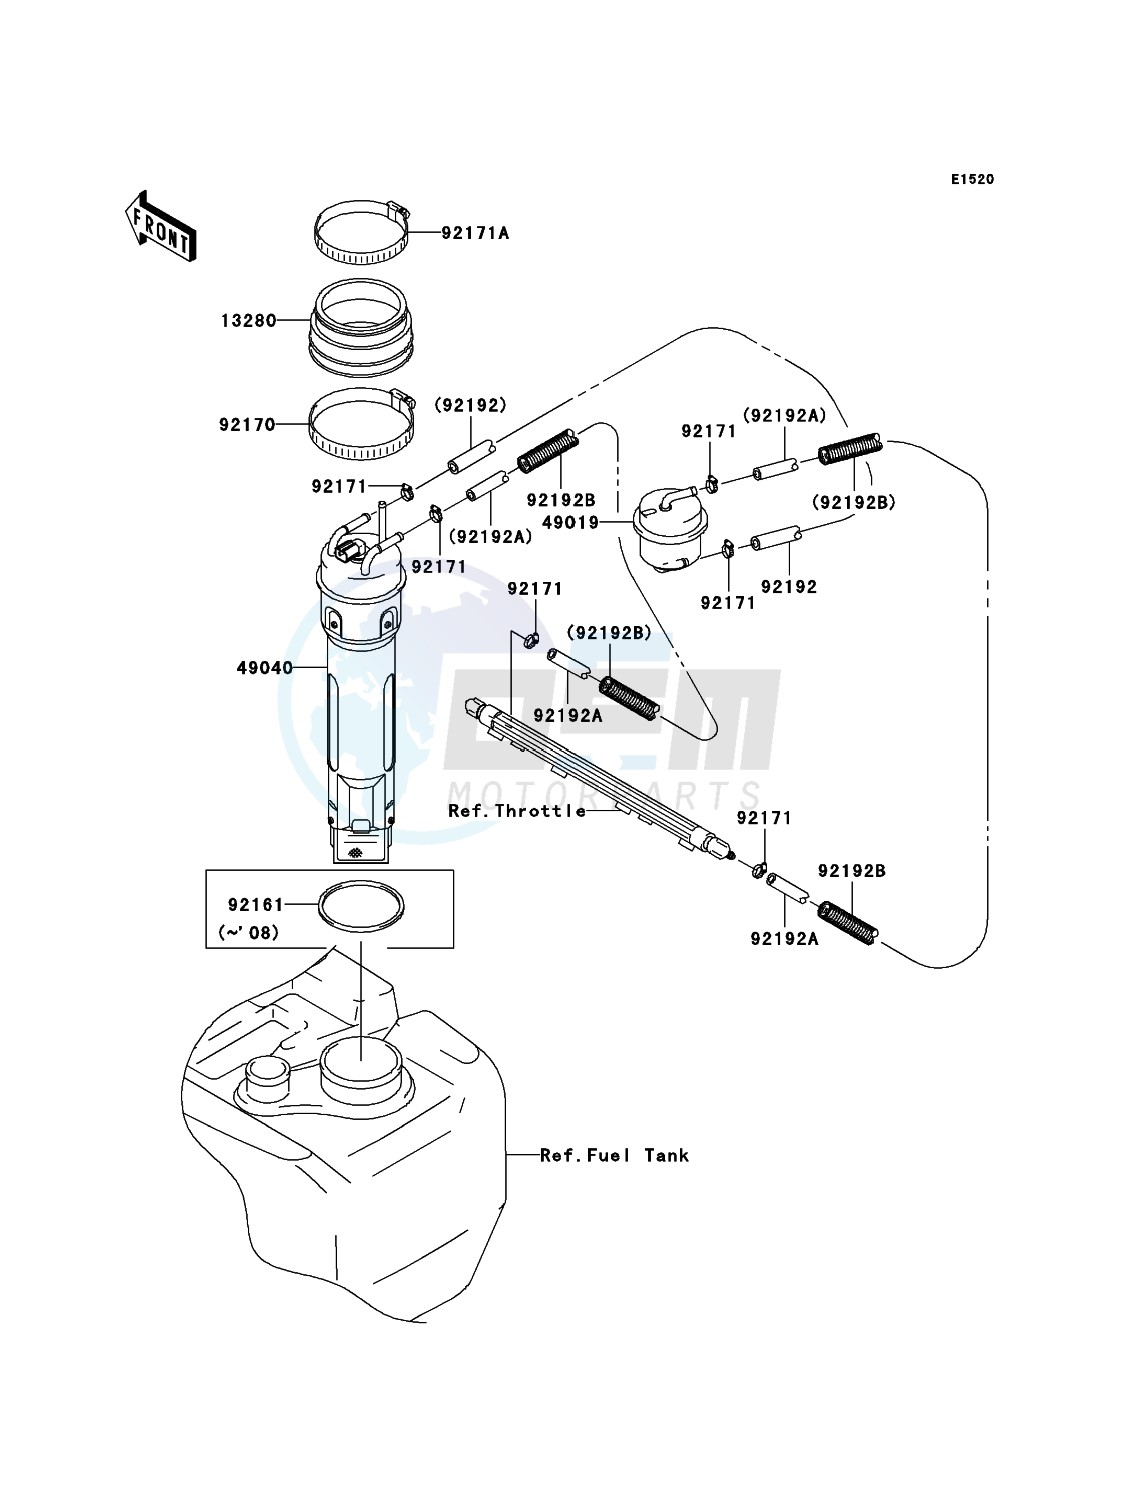 Fuel Pump image